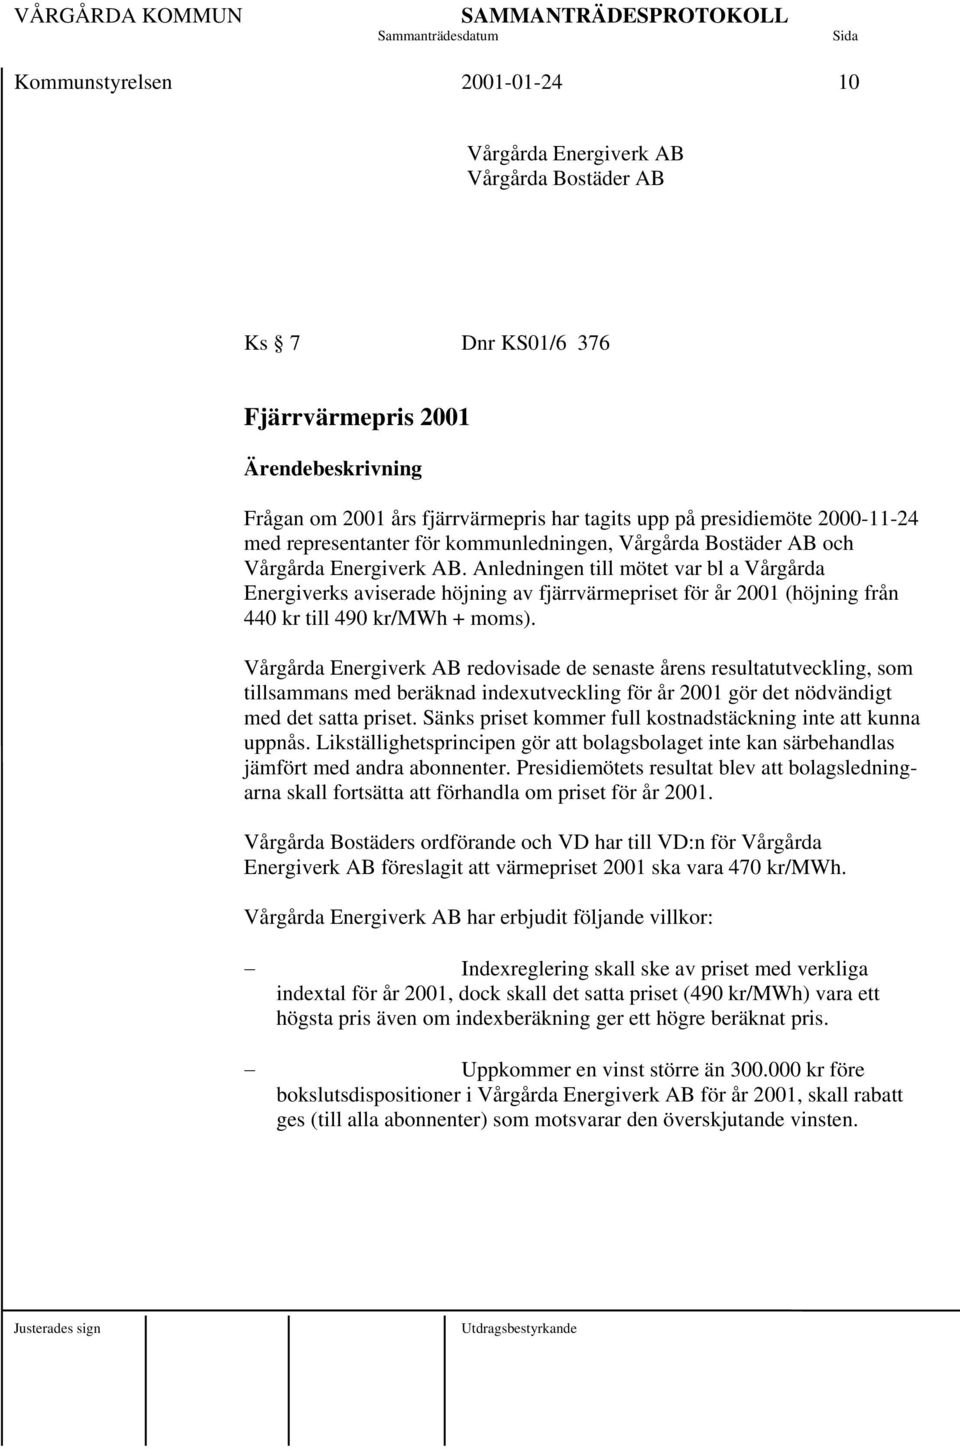 Anledningen till mötet var bl a Vårgårda Energiverks aviserade höjning av fjärrvärmepriset för år 2001 (höjning från 440 kr till 490 kr/mwh + moms).